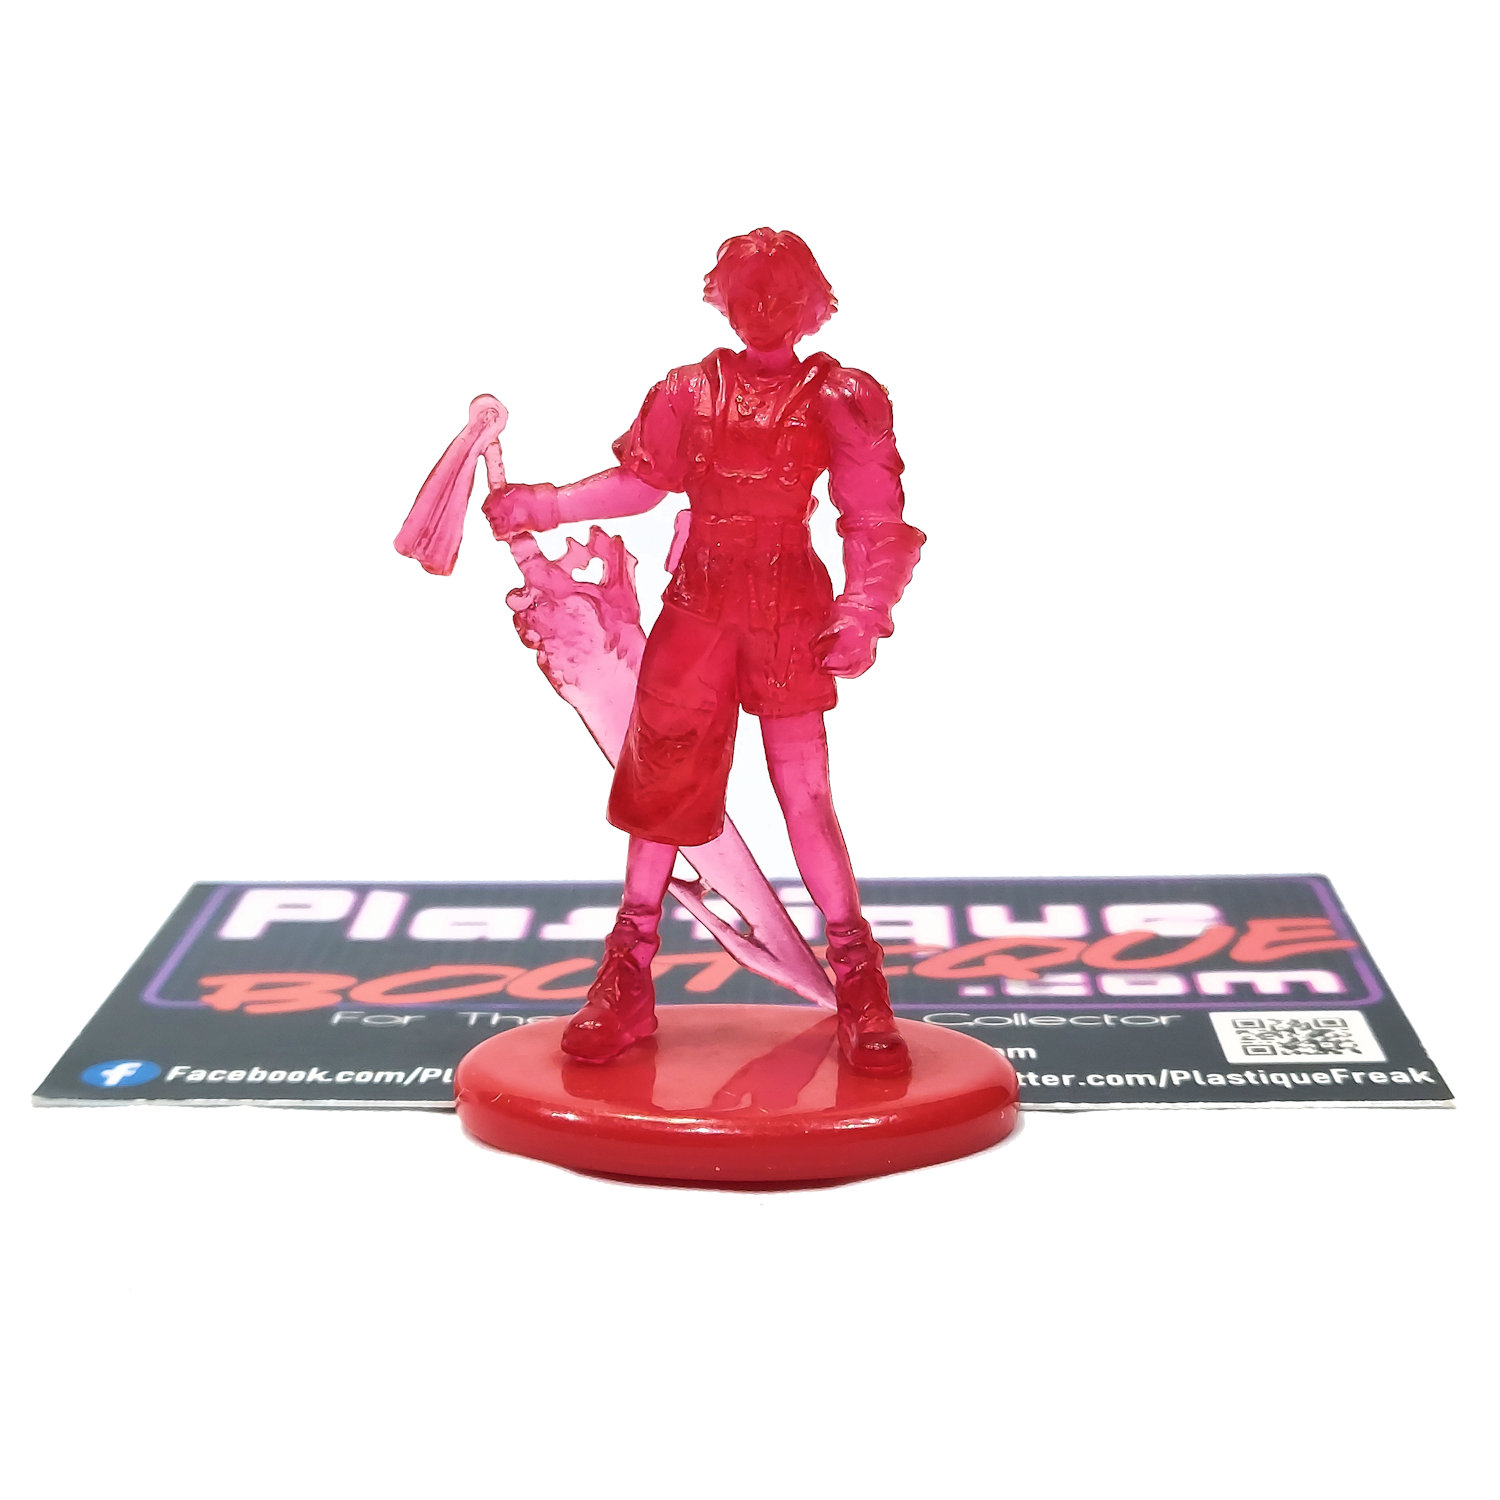 Coca-Cola Final Fantasy X Volume 3: Tidus Mini Figure (Red Crystal Version)